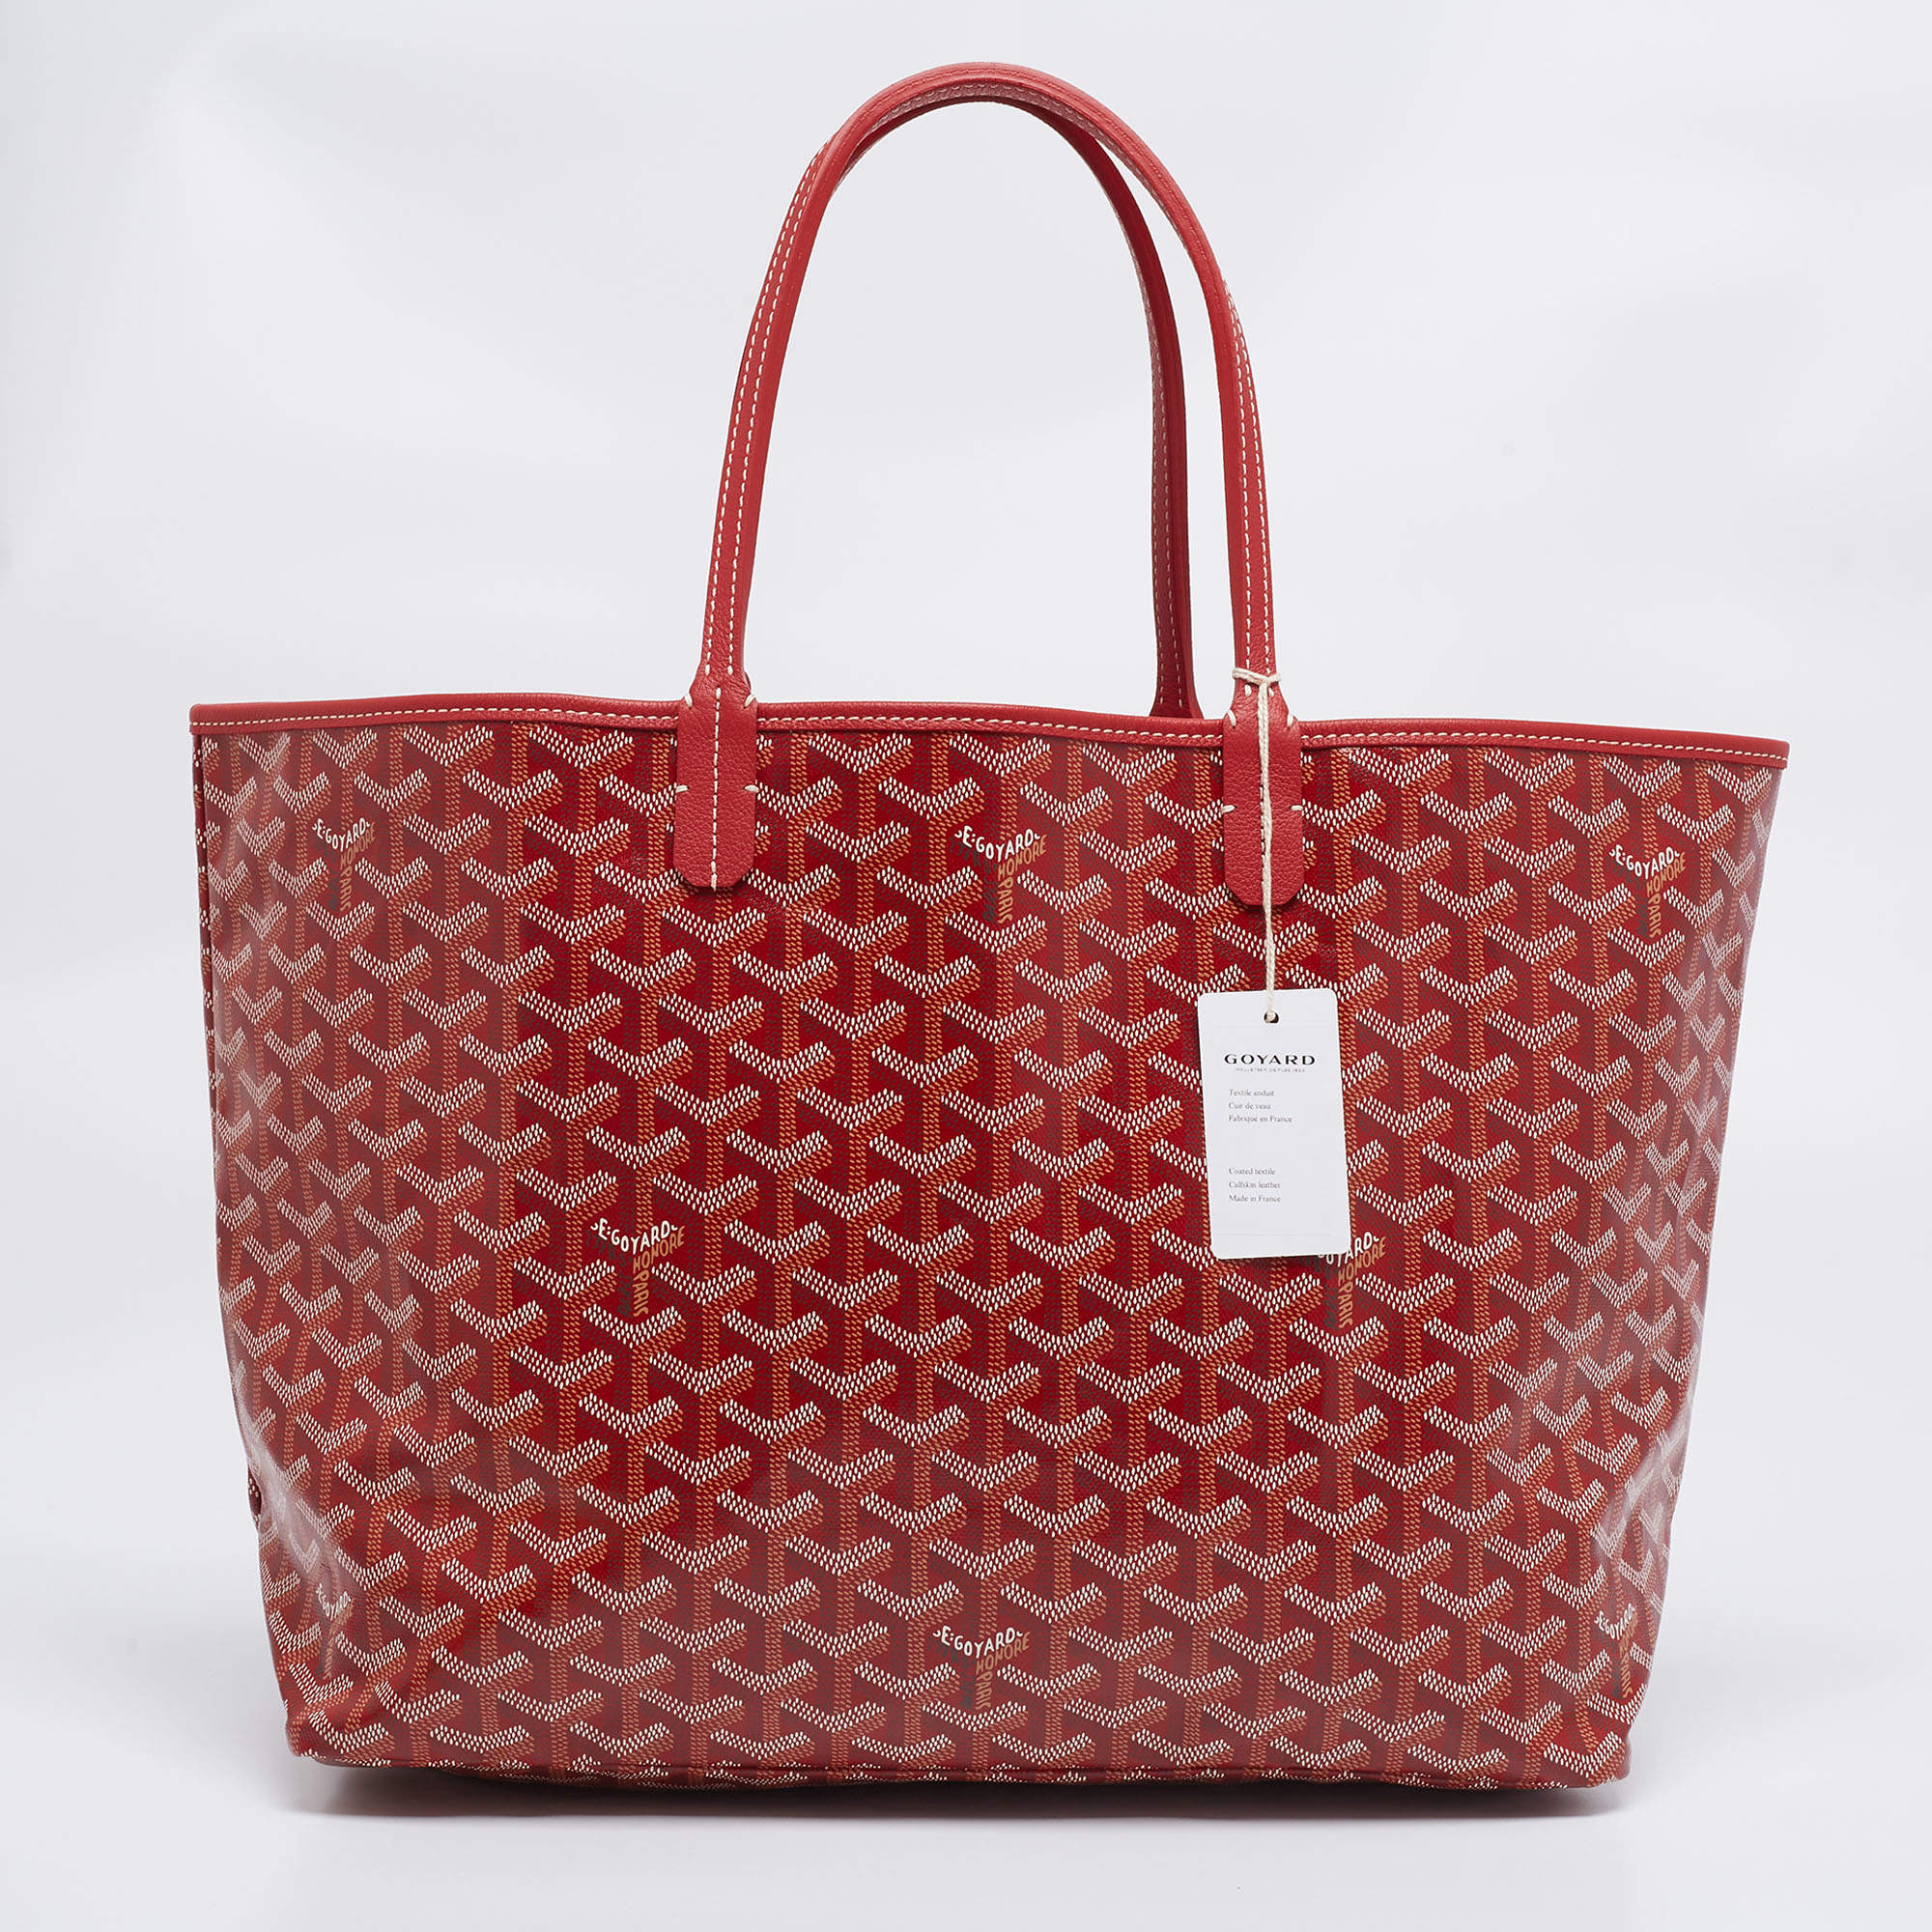 Goyard Red Coated Canvas St. Louis Tote Handbag - My Luxury Bargain Qatar